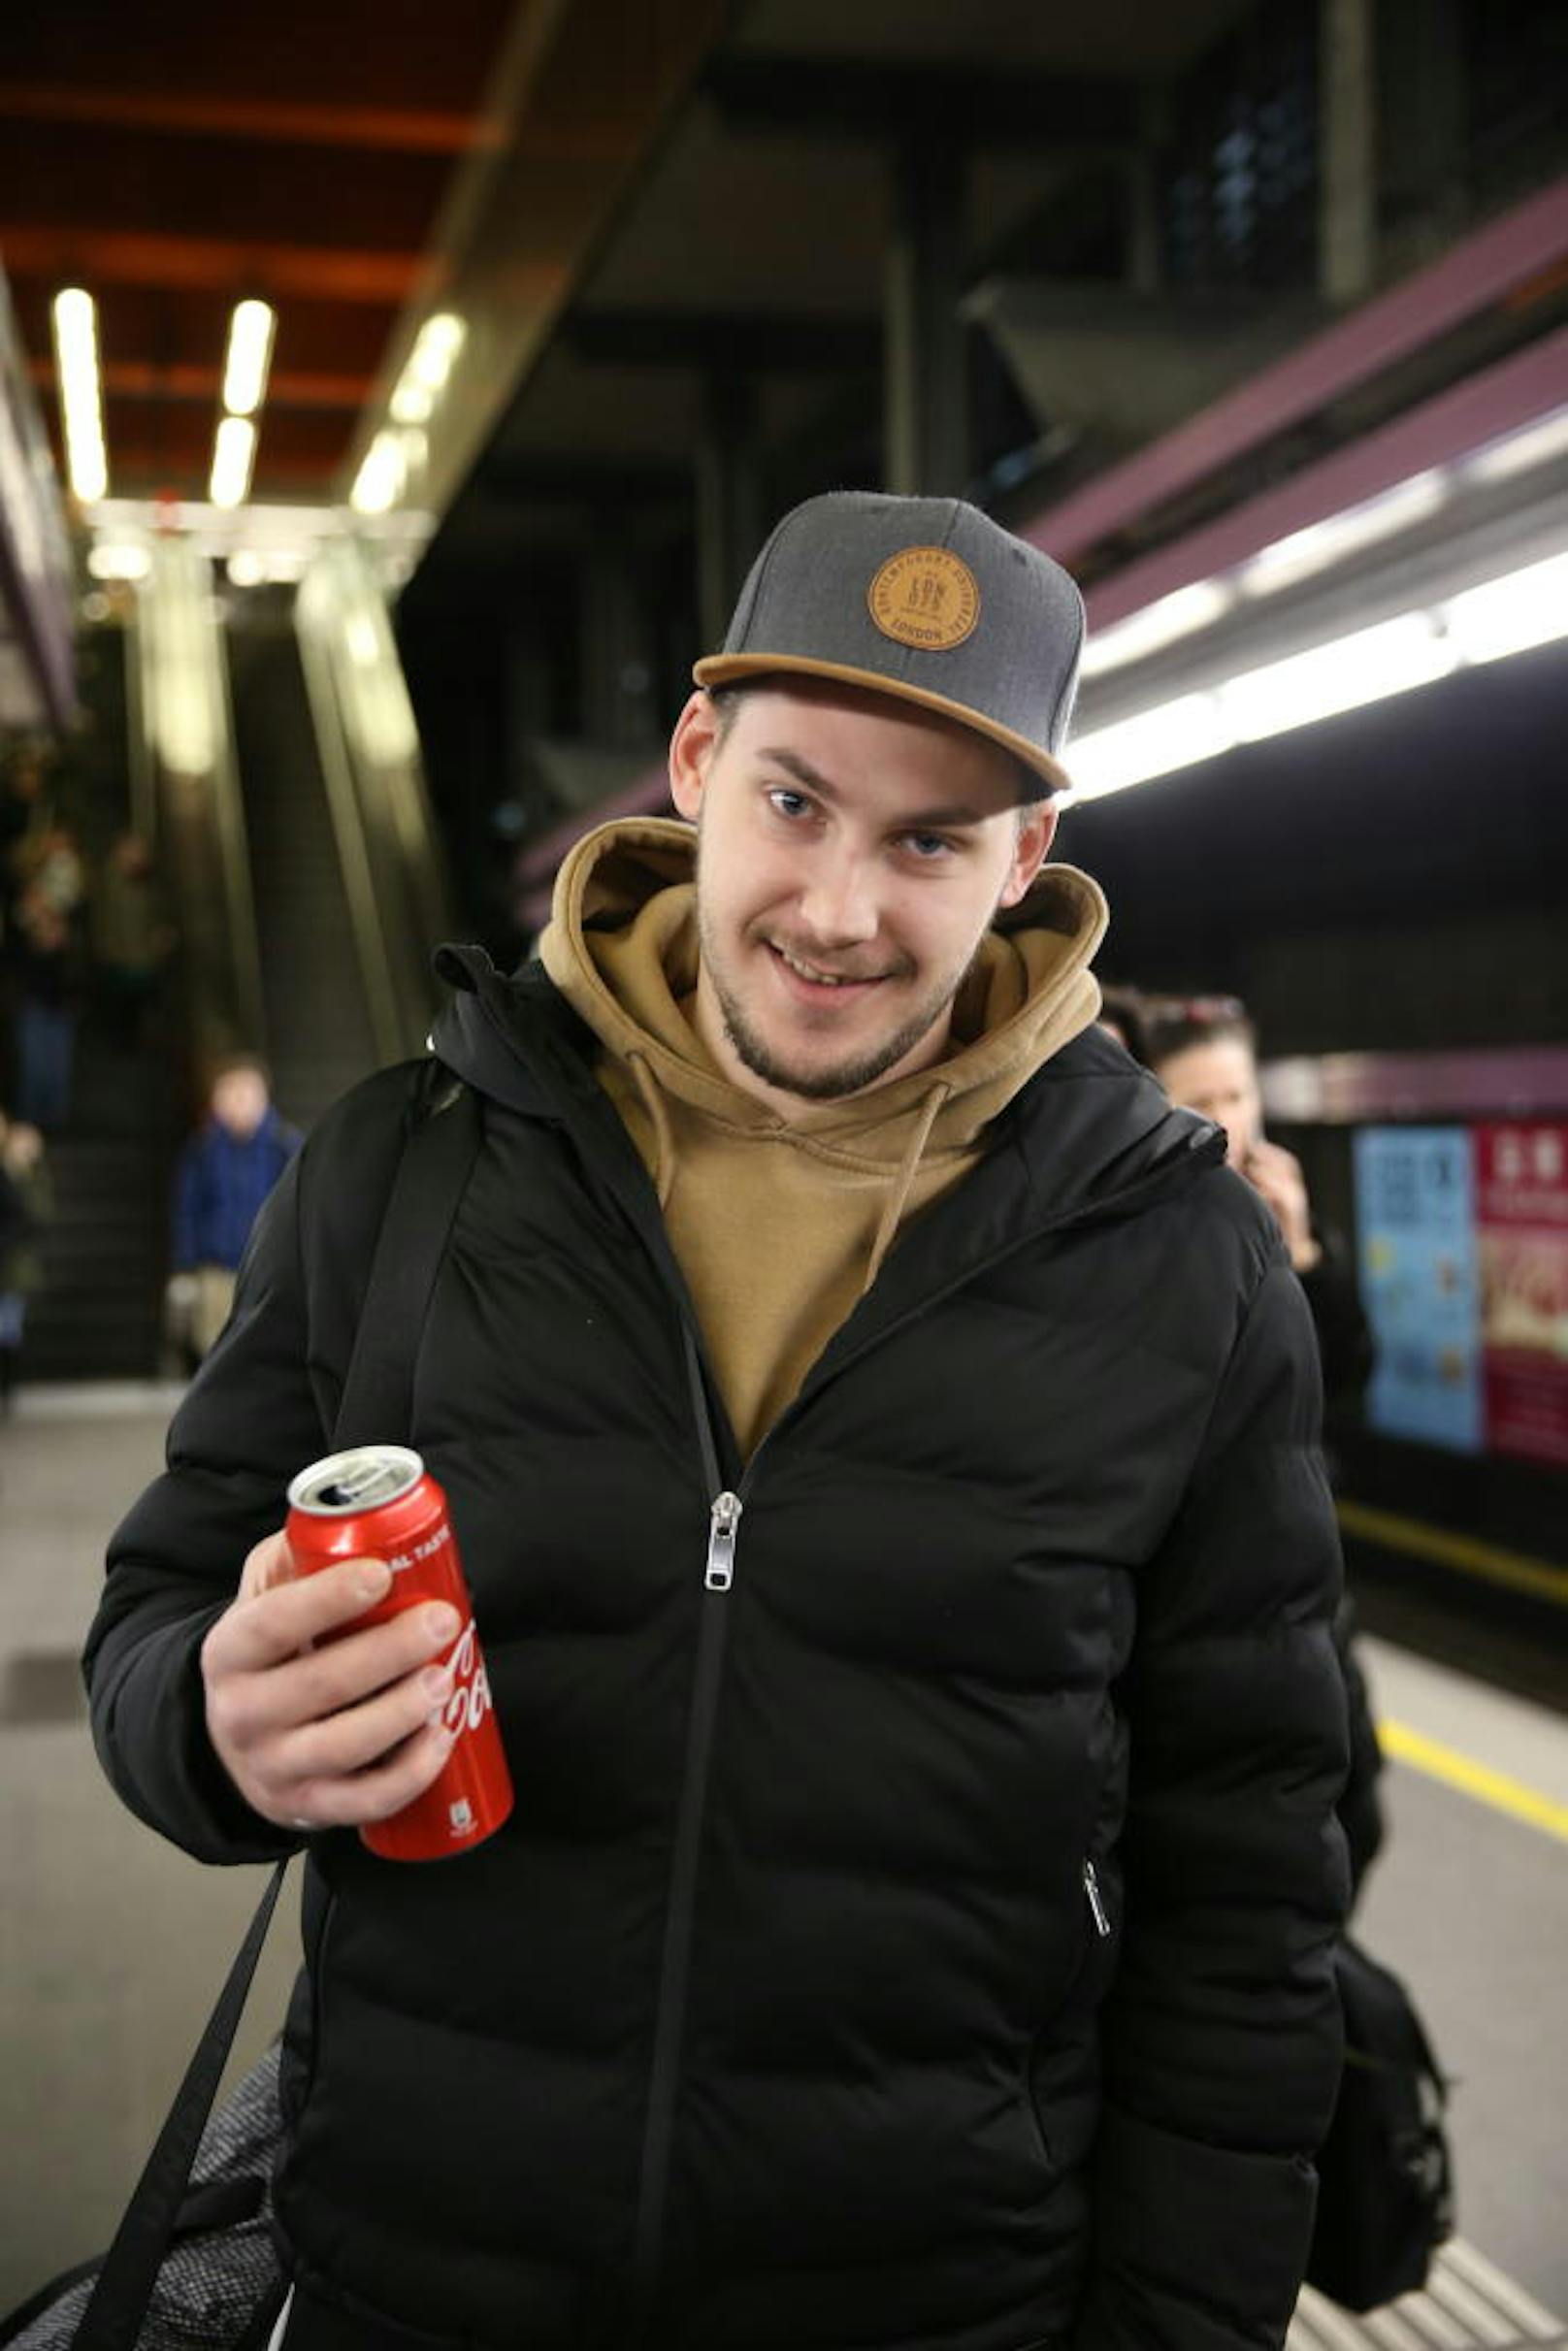 Manuel (26): Ich esse und trinke in der U-Bahn weiter. Ich hatte keine Ahnung. Gibt es denn eine Strafe?  